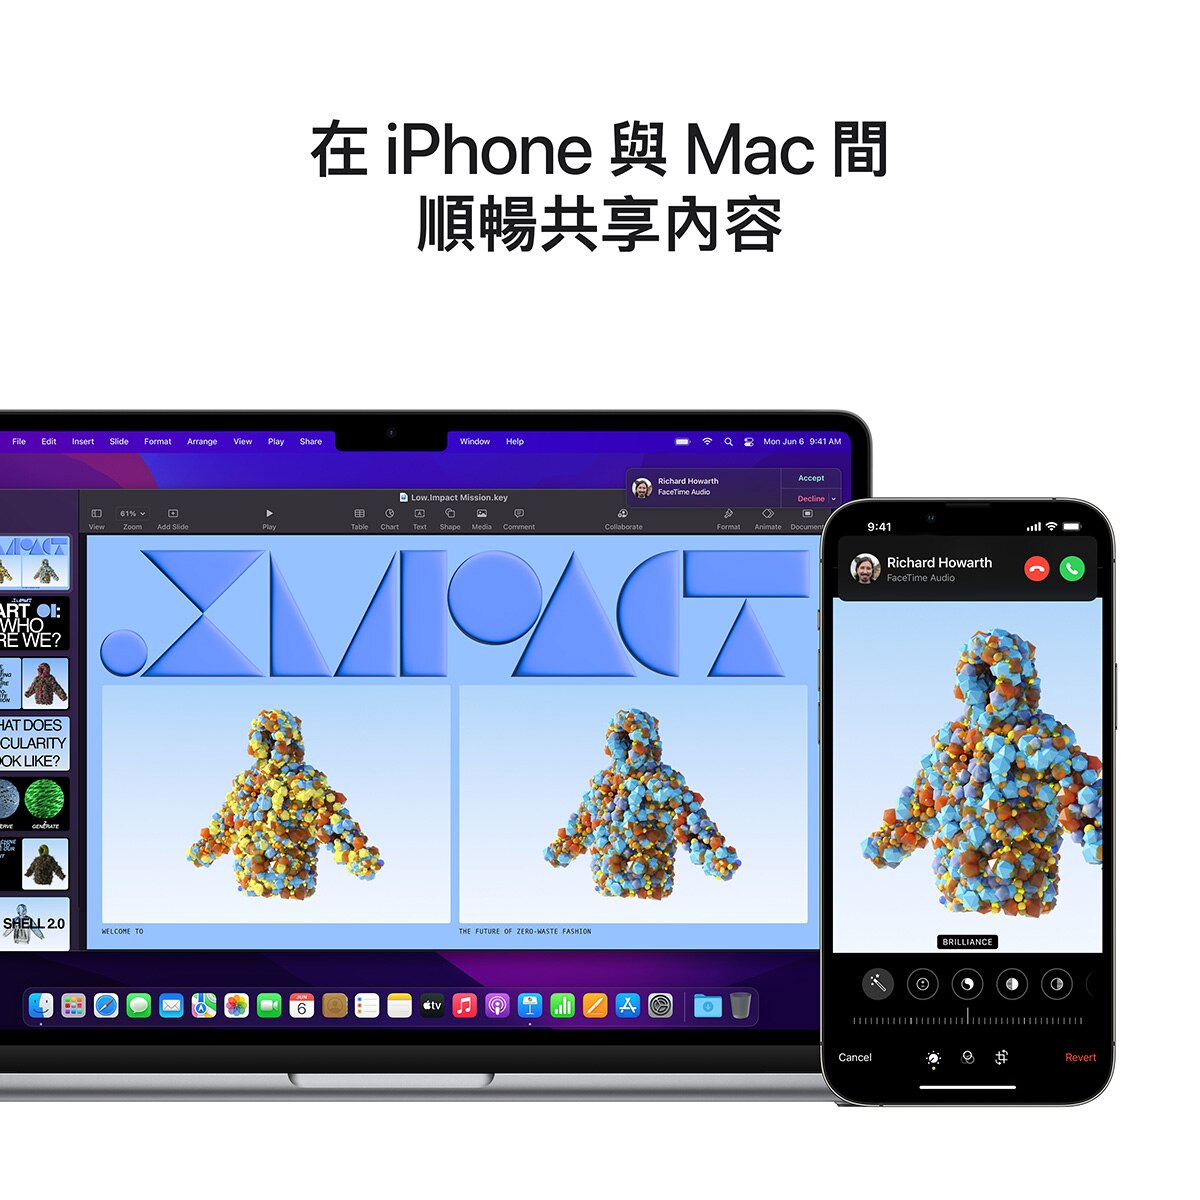 MacBook Air 13吋 M2晶片 8核心 CPU 10核心 GPU 8GB 512GB 與iPhone順暢共享內容